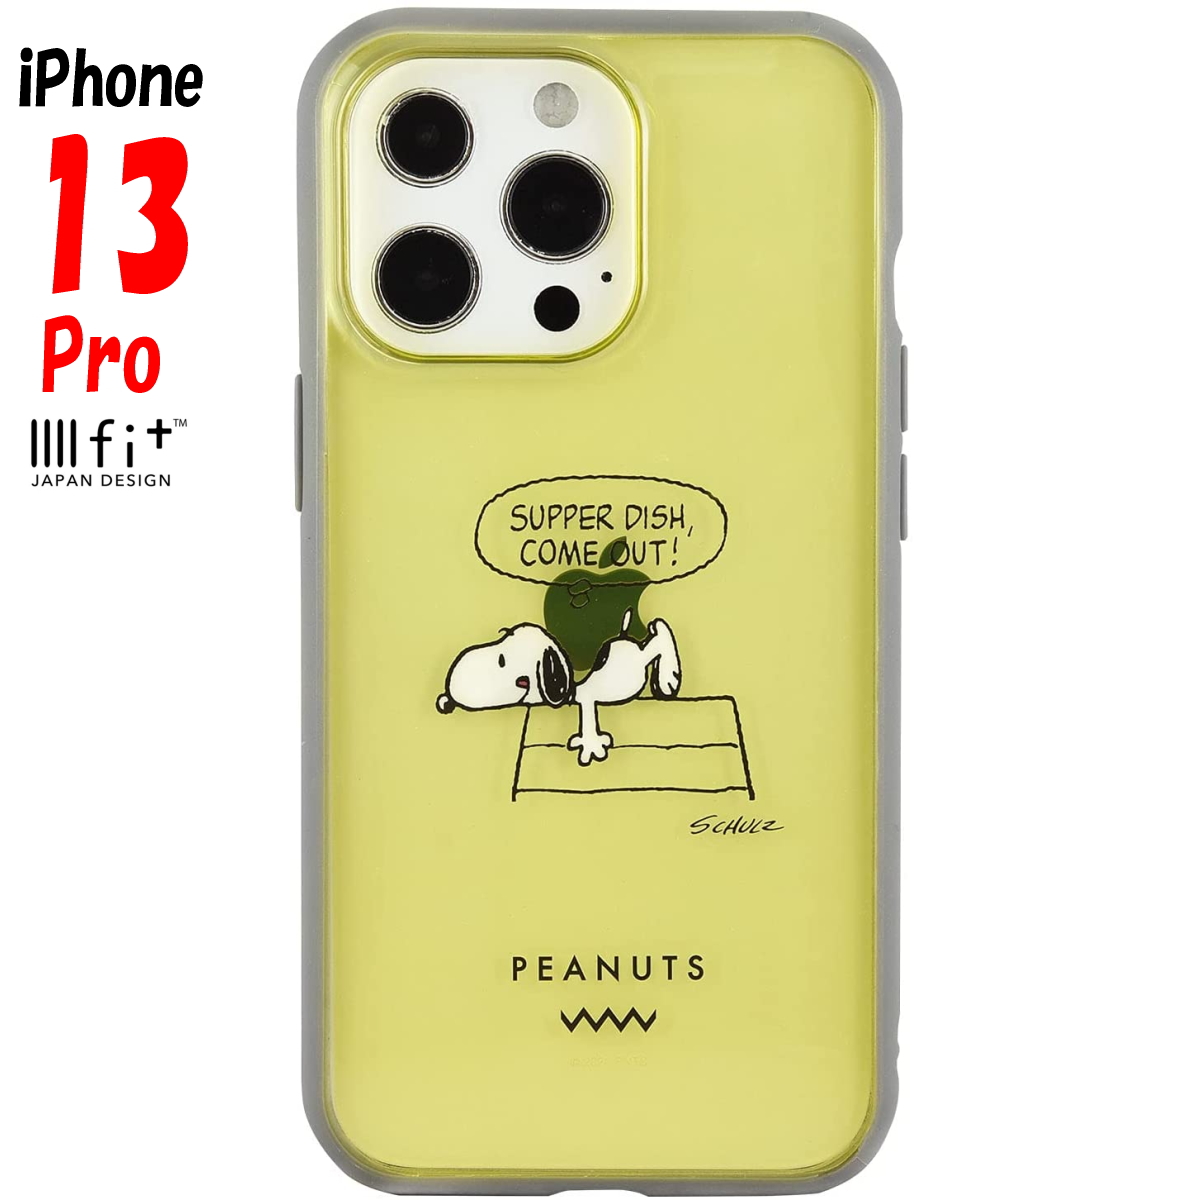 【送料無料】iPhone13Proに対応するスマホケース！ スヌーピー iPhone13 Pro ケース イーフィット クリア IIIIfit Clear ピーナッツ キャラクター グッズ ドッグディッシュ SNG-606E